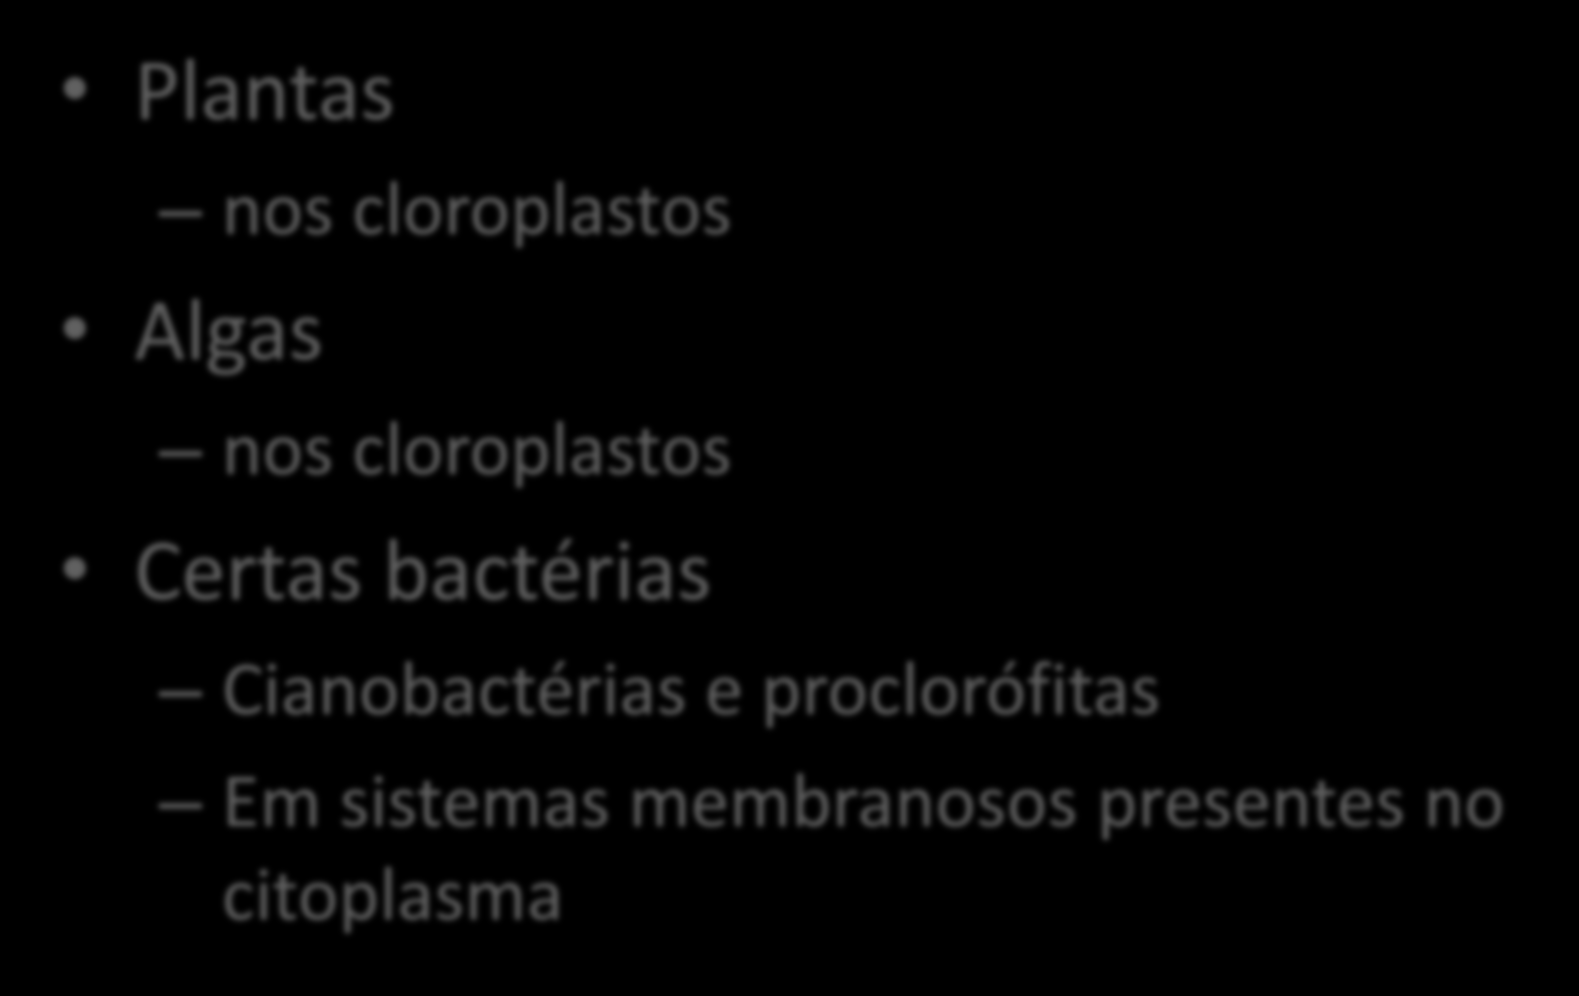 OCORRÊNCIA Plantas nos cloroplastos Algas nos cloroplastos Certas bactérias